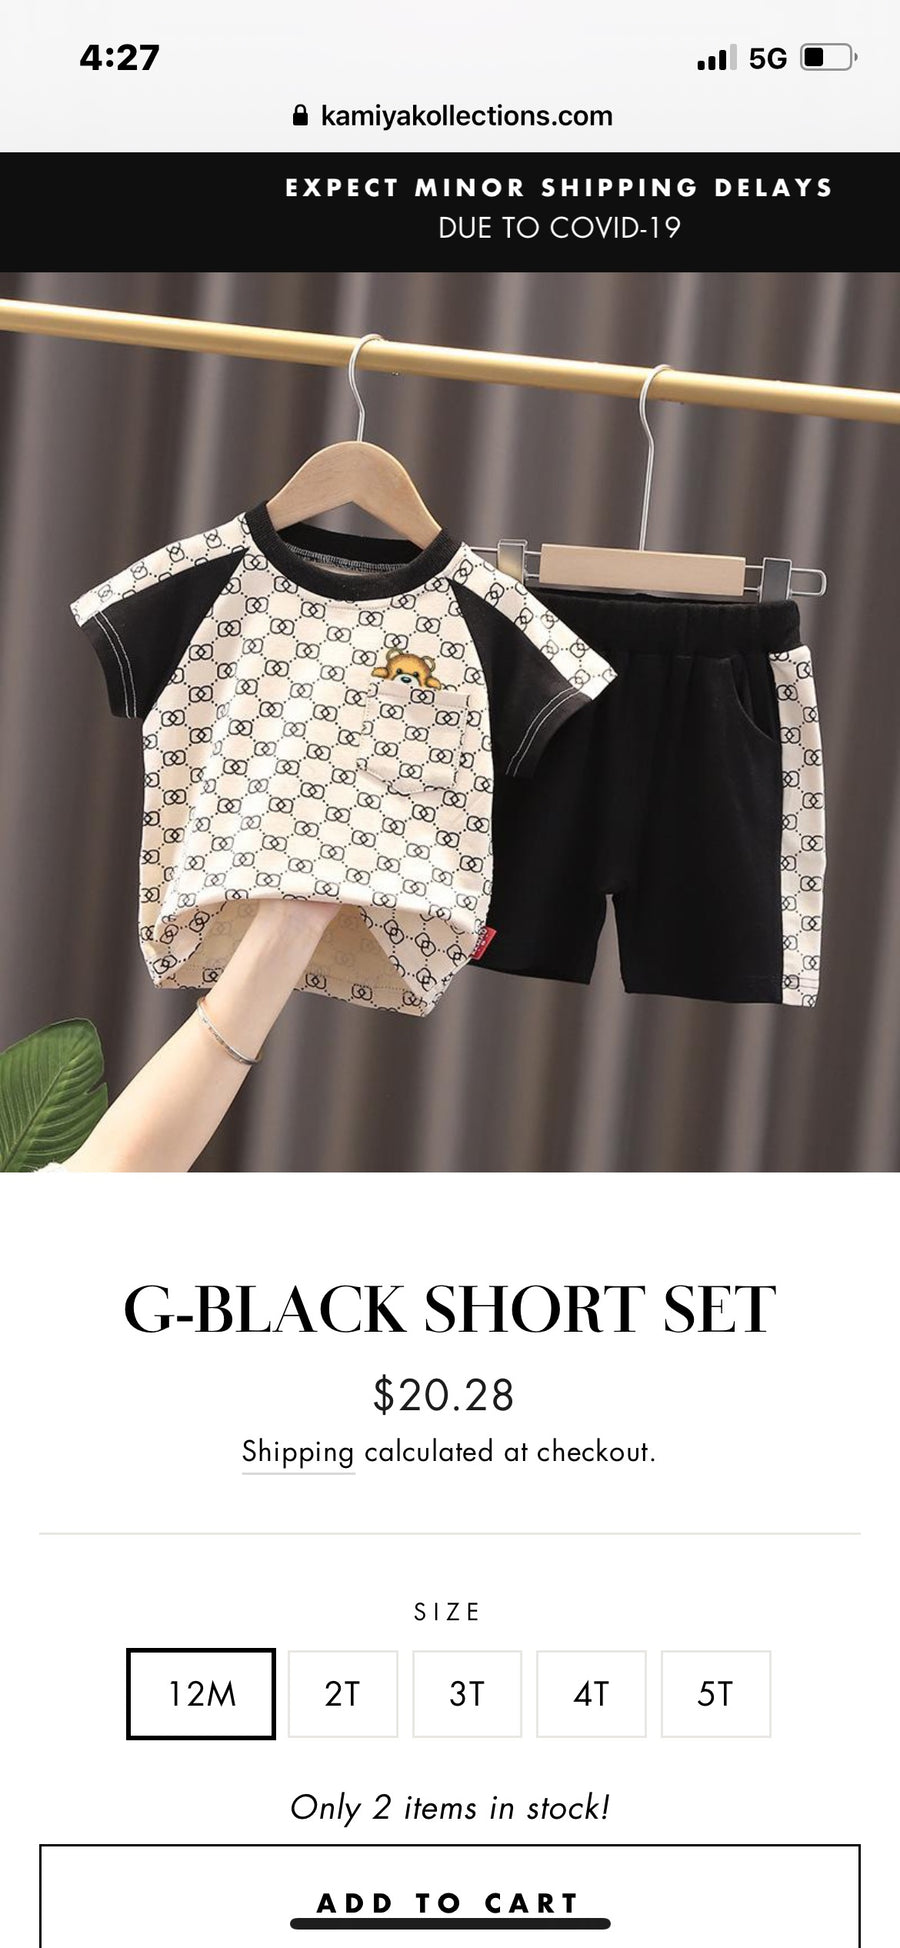 G- Black Short Sets